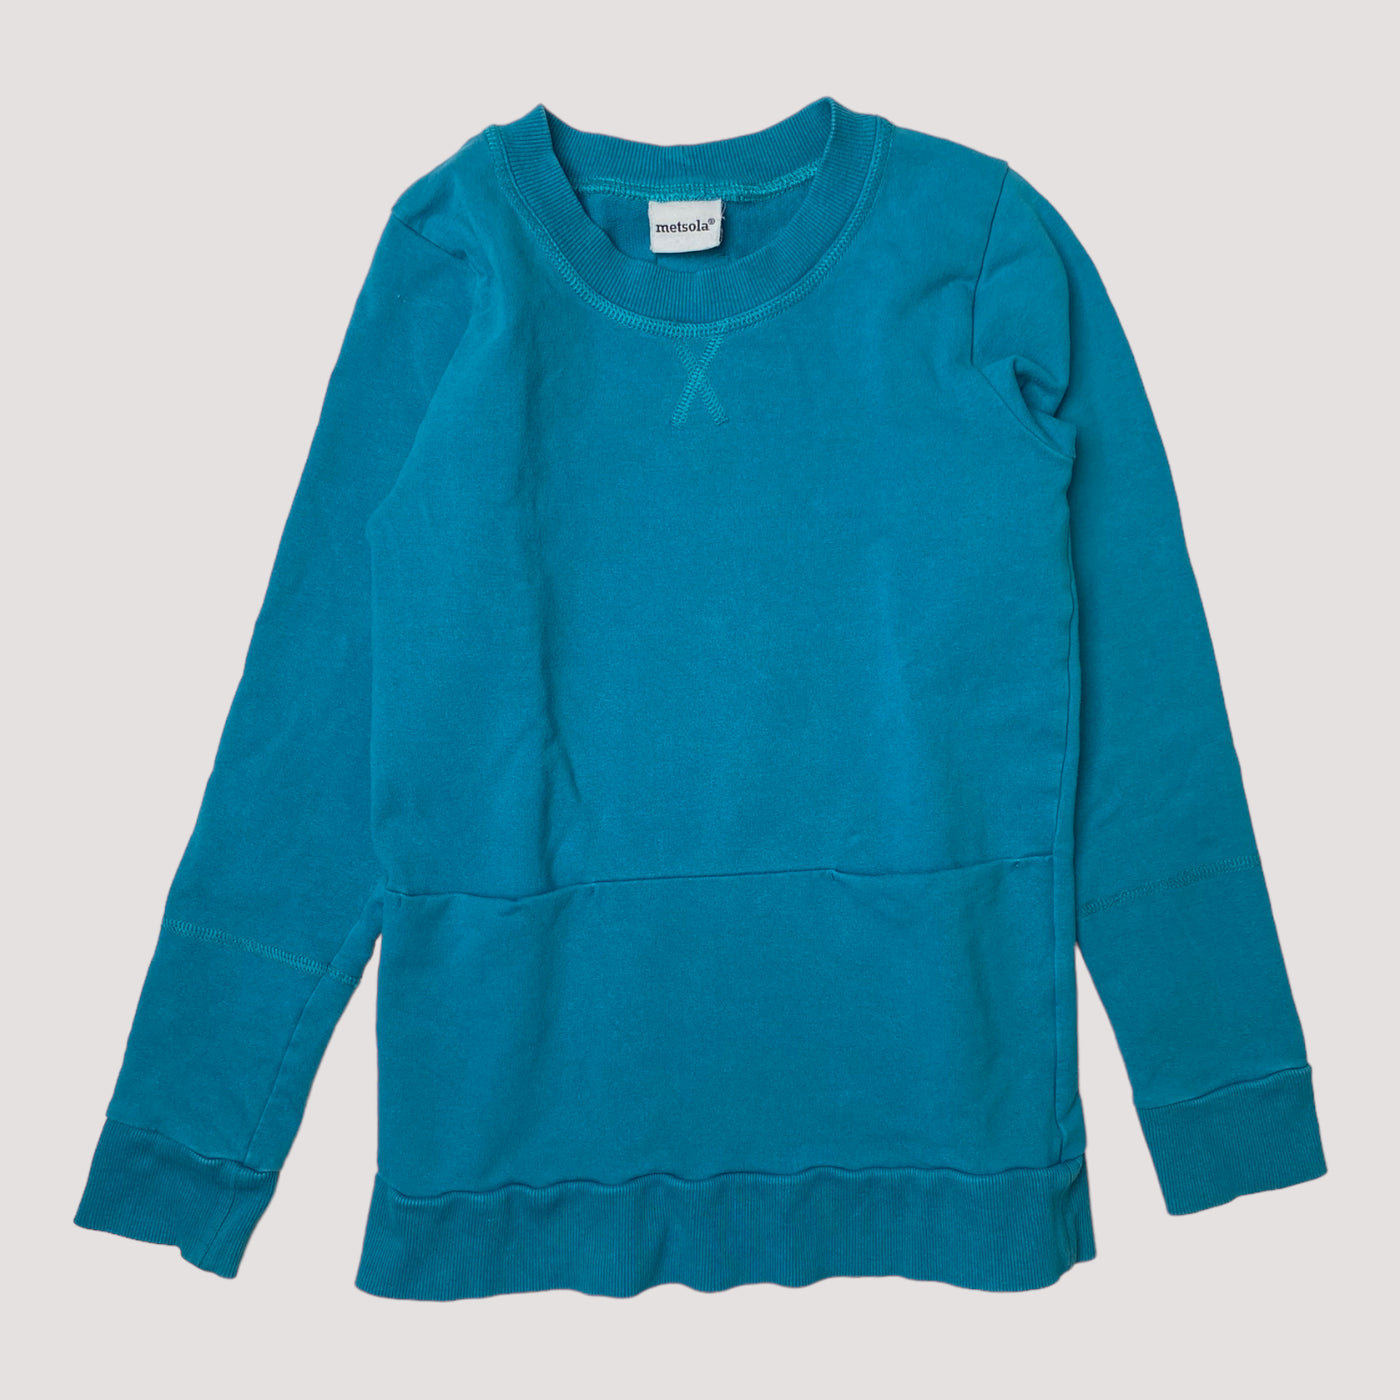 Metsola sweatshirt, teal | 134/140cm